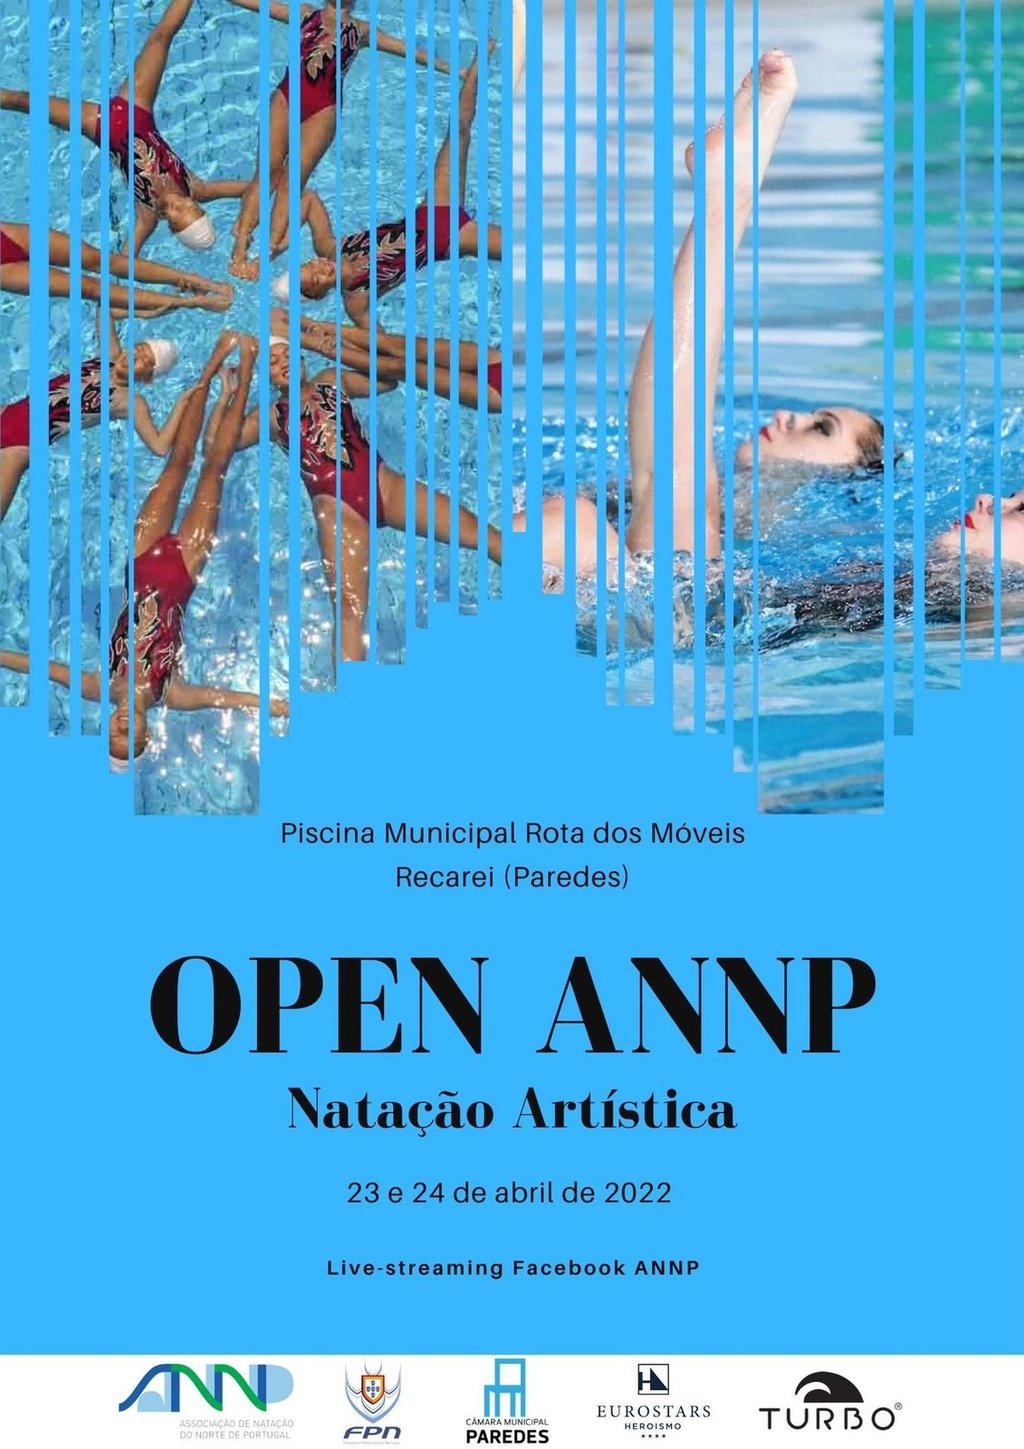 OPEN ANNP - Natação Artística